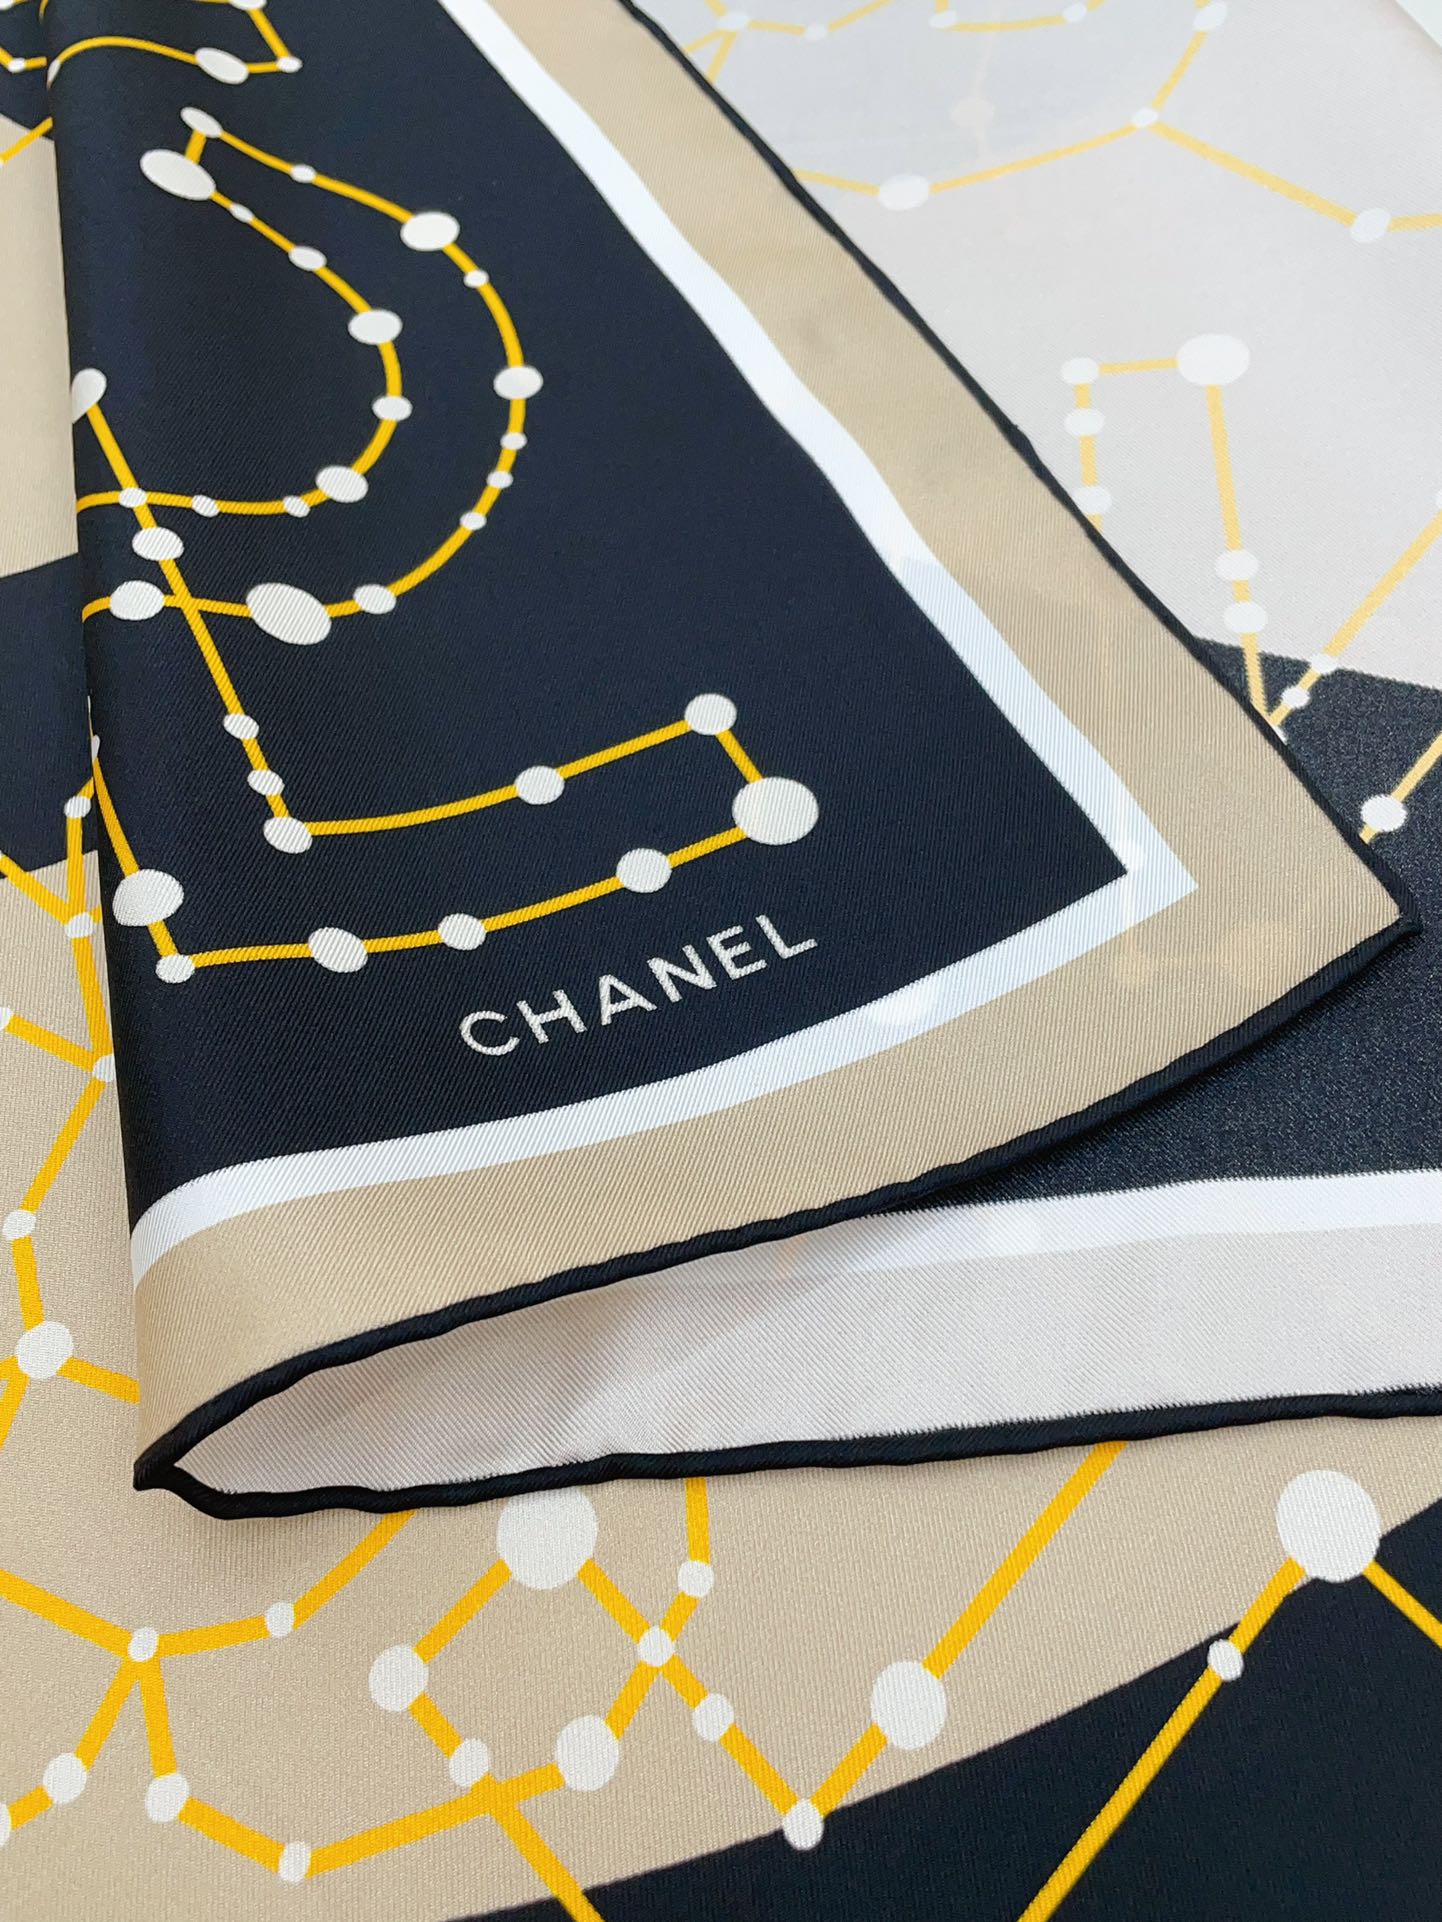 シャネルスカーフ激安通販 シルク 人気定番 美しい ロゴマーク シンプル ファッション レディース ブラウン_5